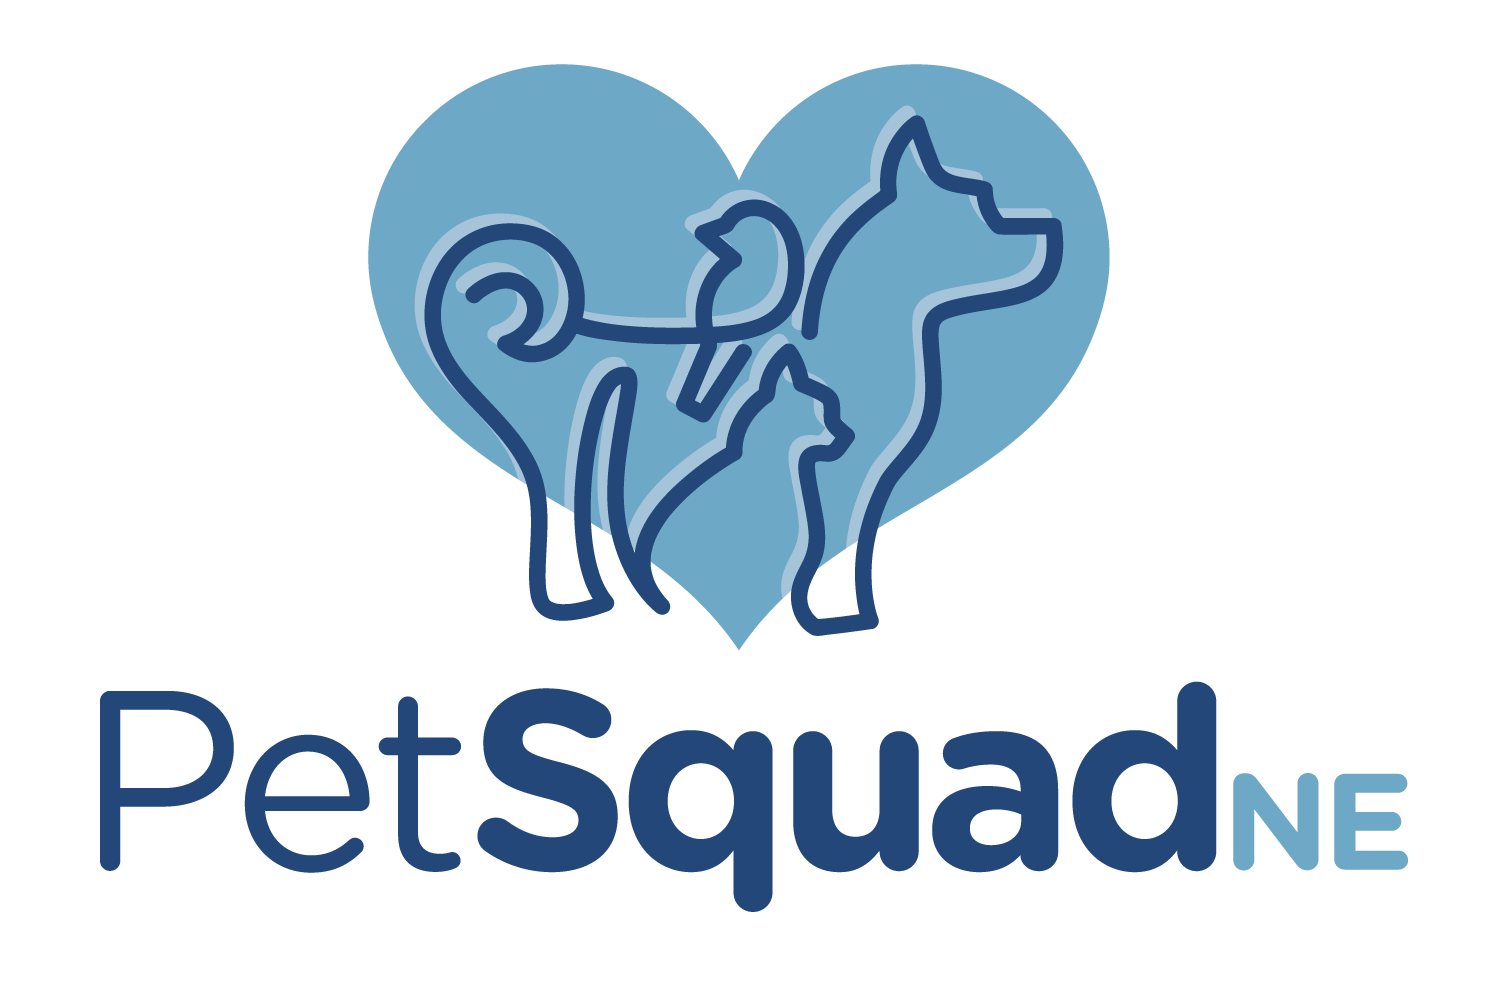 Pet Squad NE